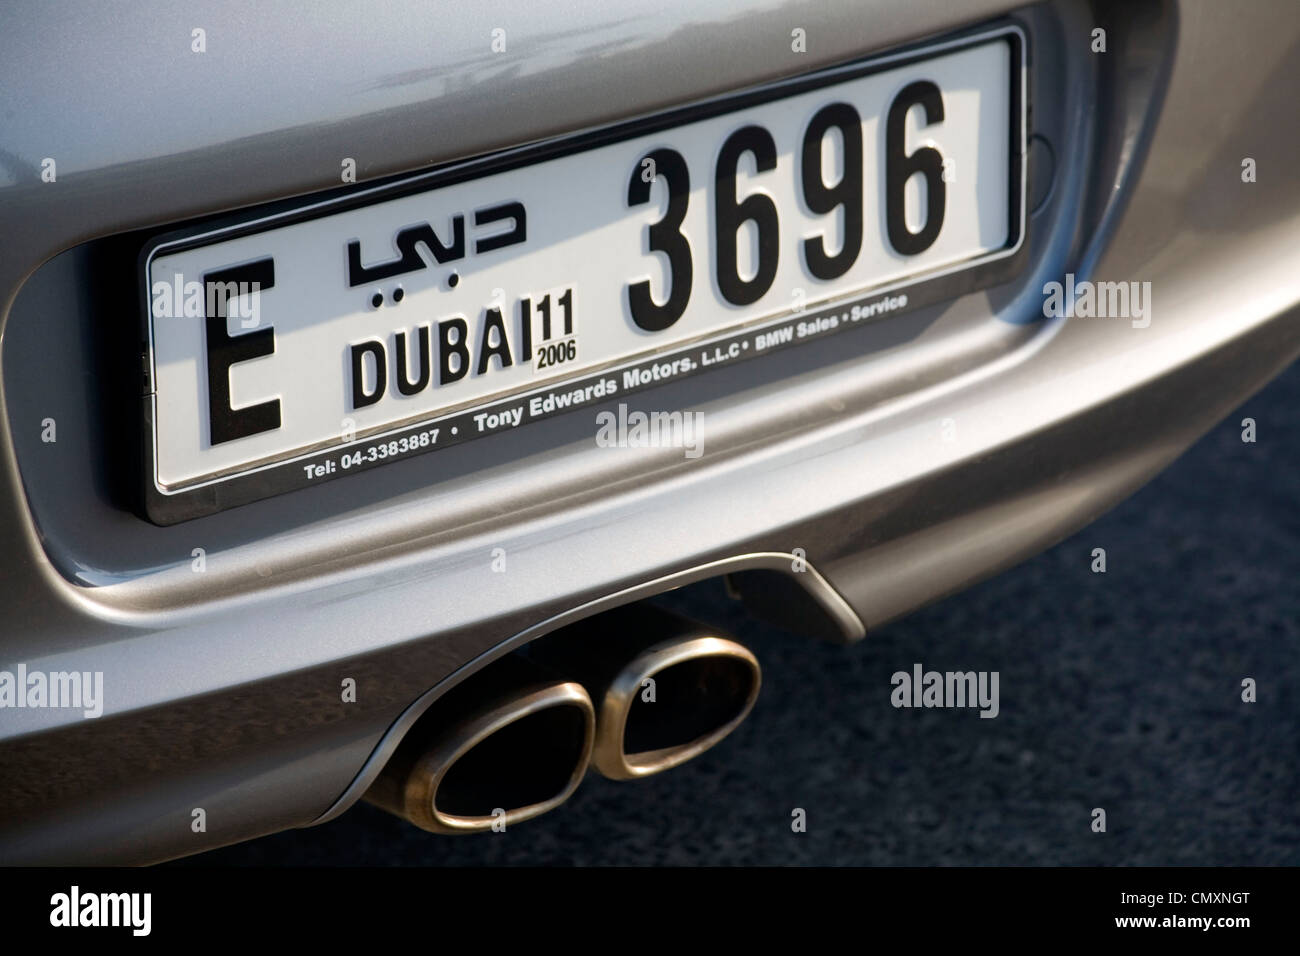 Dubai numero di targa Porsche Foto Stock